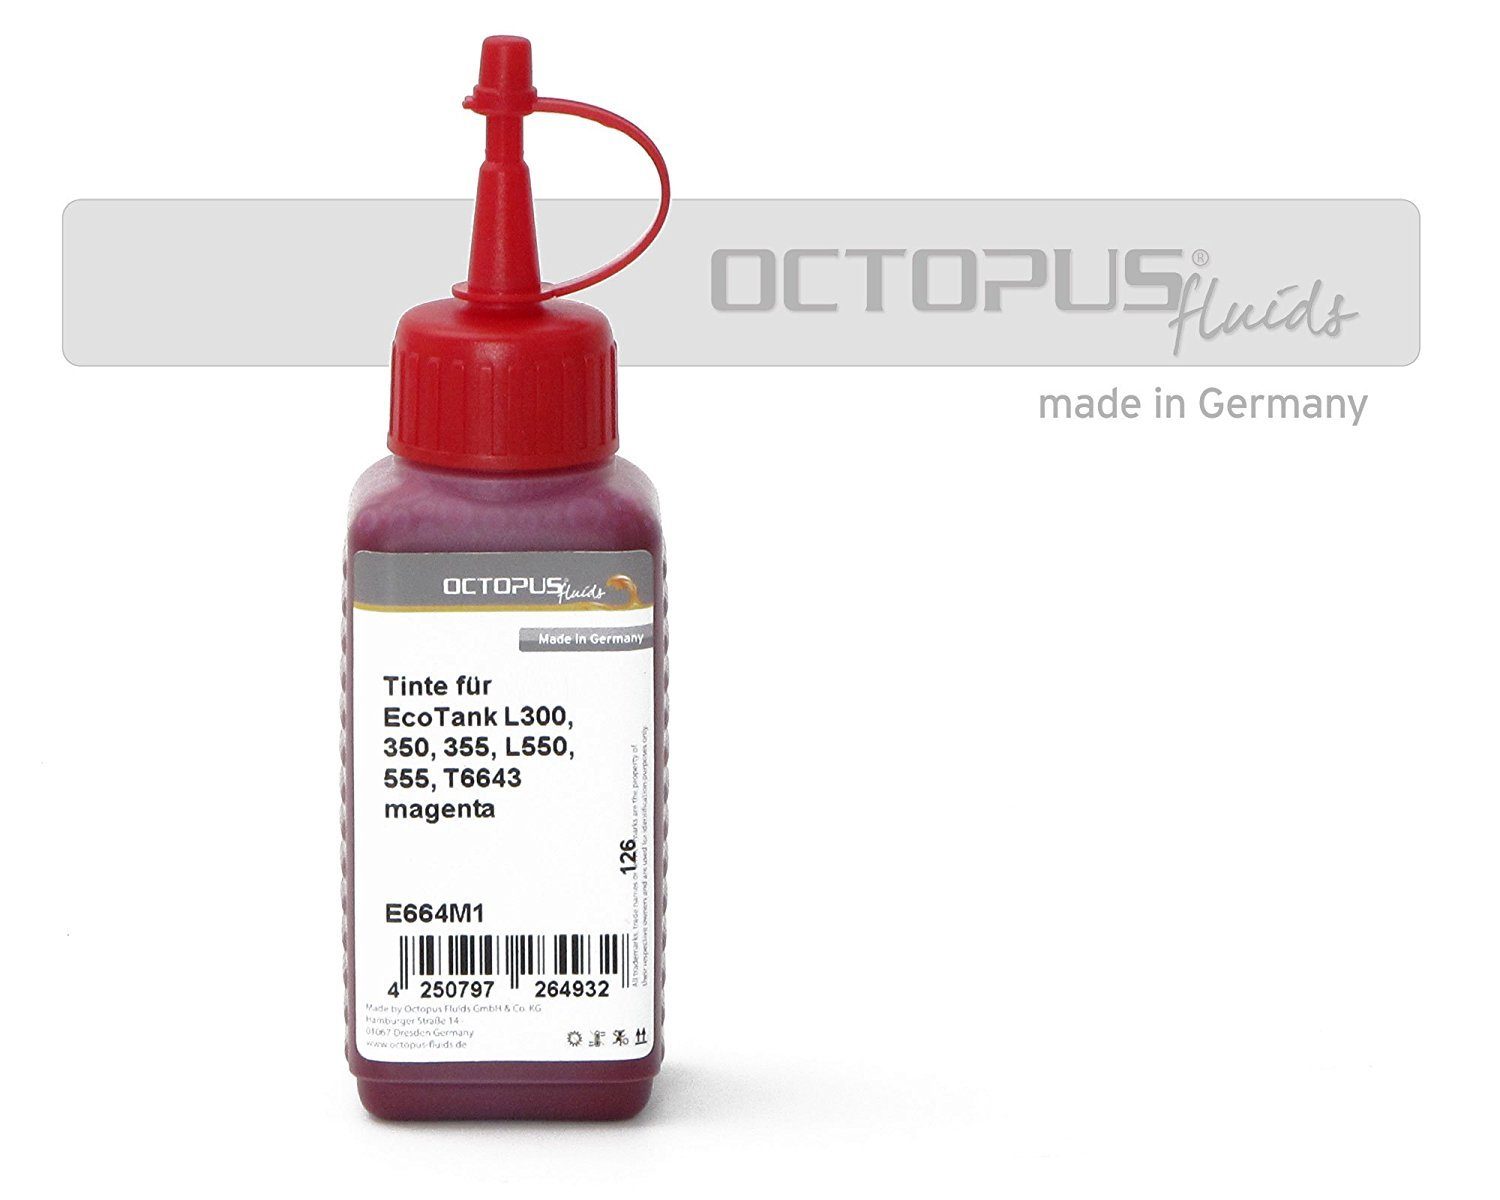 OCTOPUS Fluids Druckertinte für Epson EcoTank L300, L355, L555 Drucker, T6643 magenta Nachfülltinte (für Epson, 1x 100 ml) Magenta 100ml